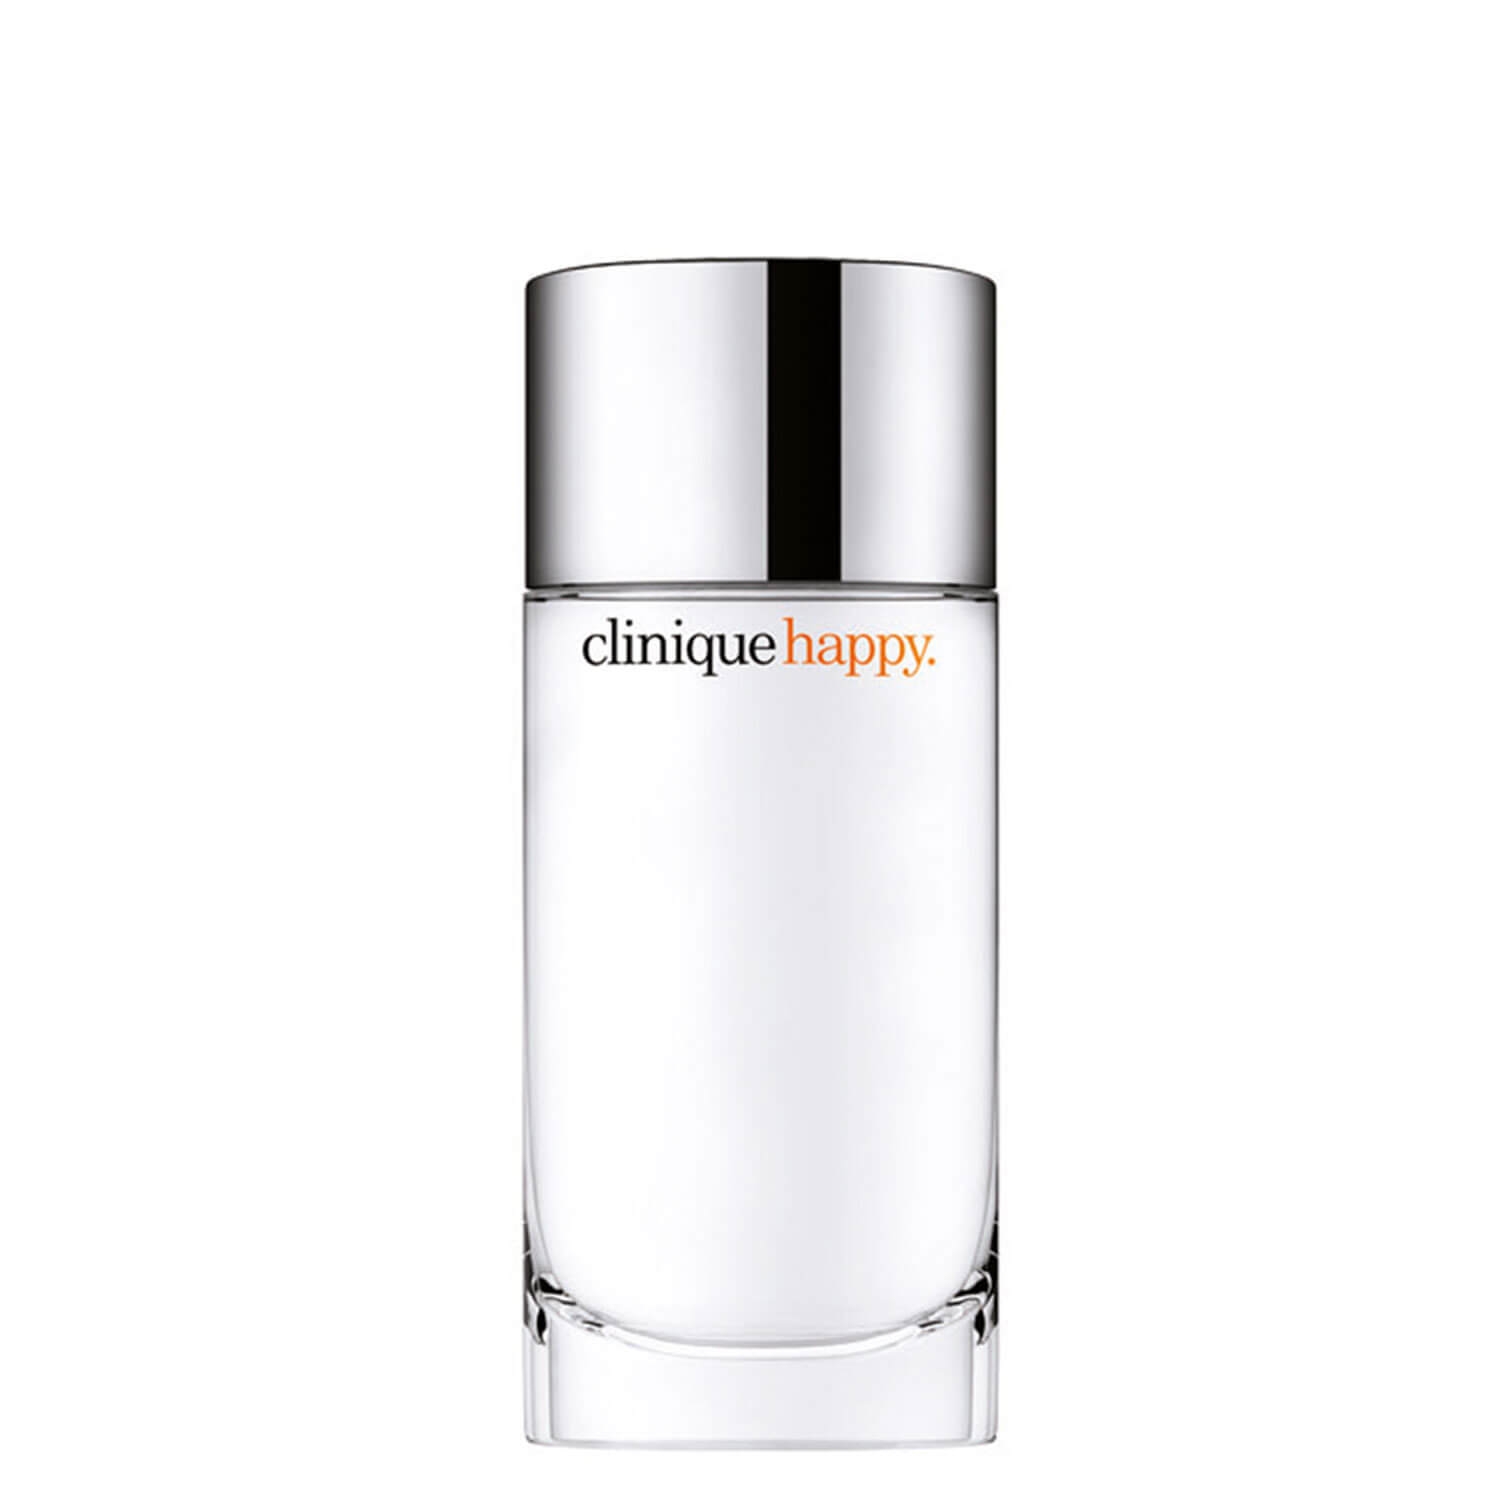 Produktbild von Clinique Happy - Perfume Spray